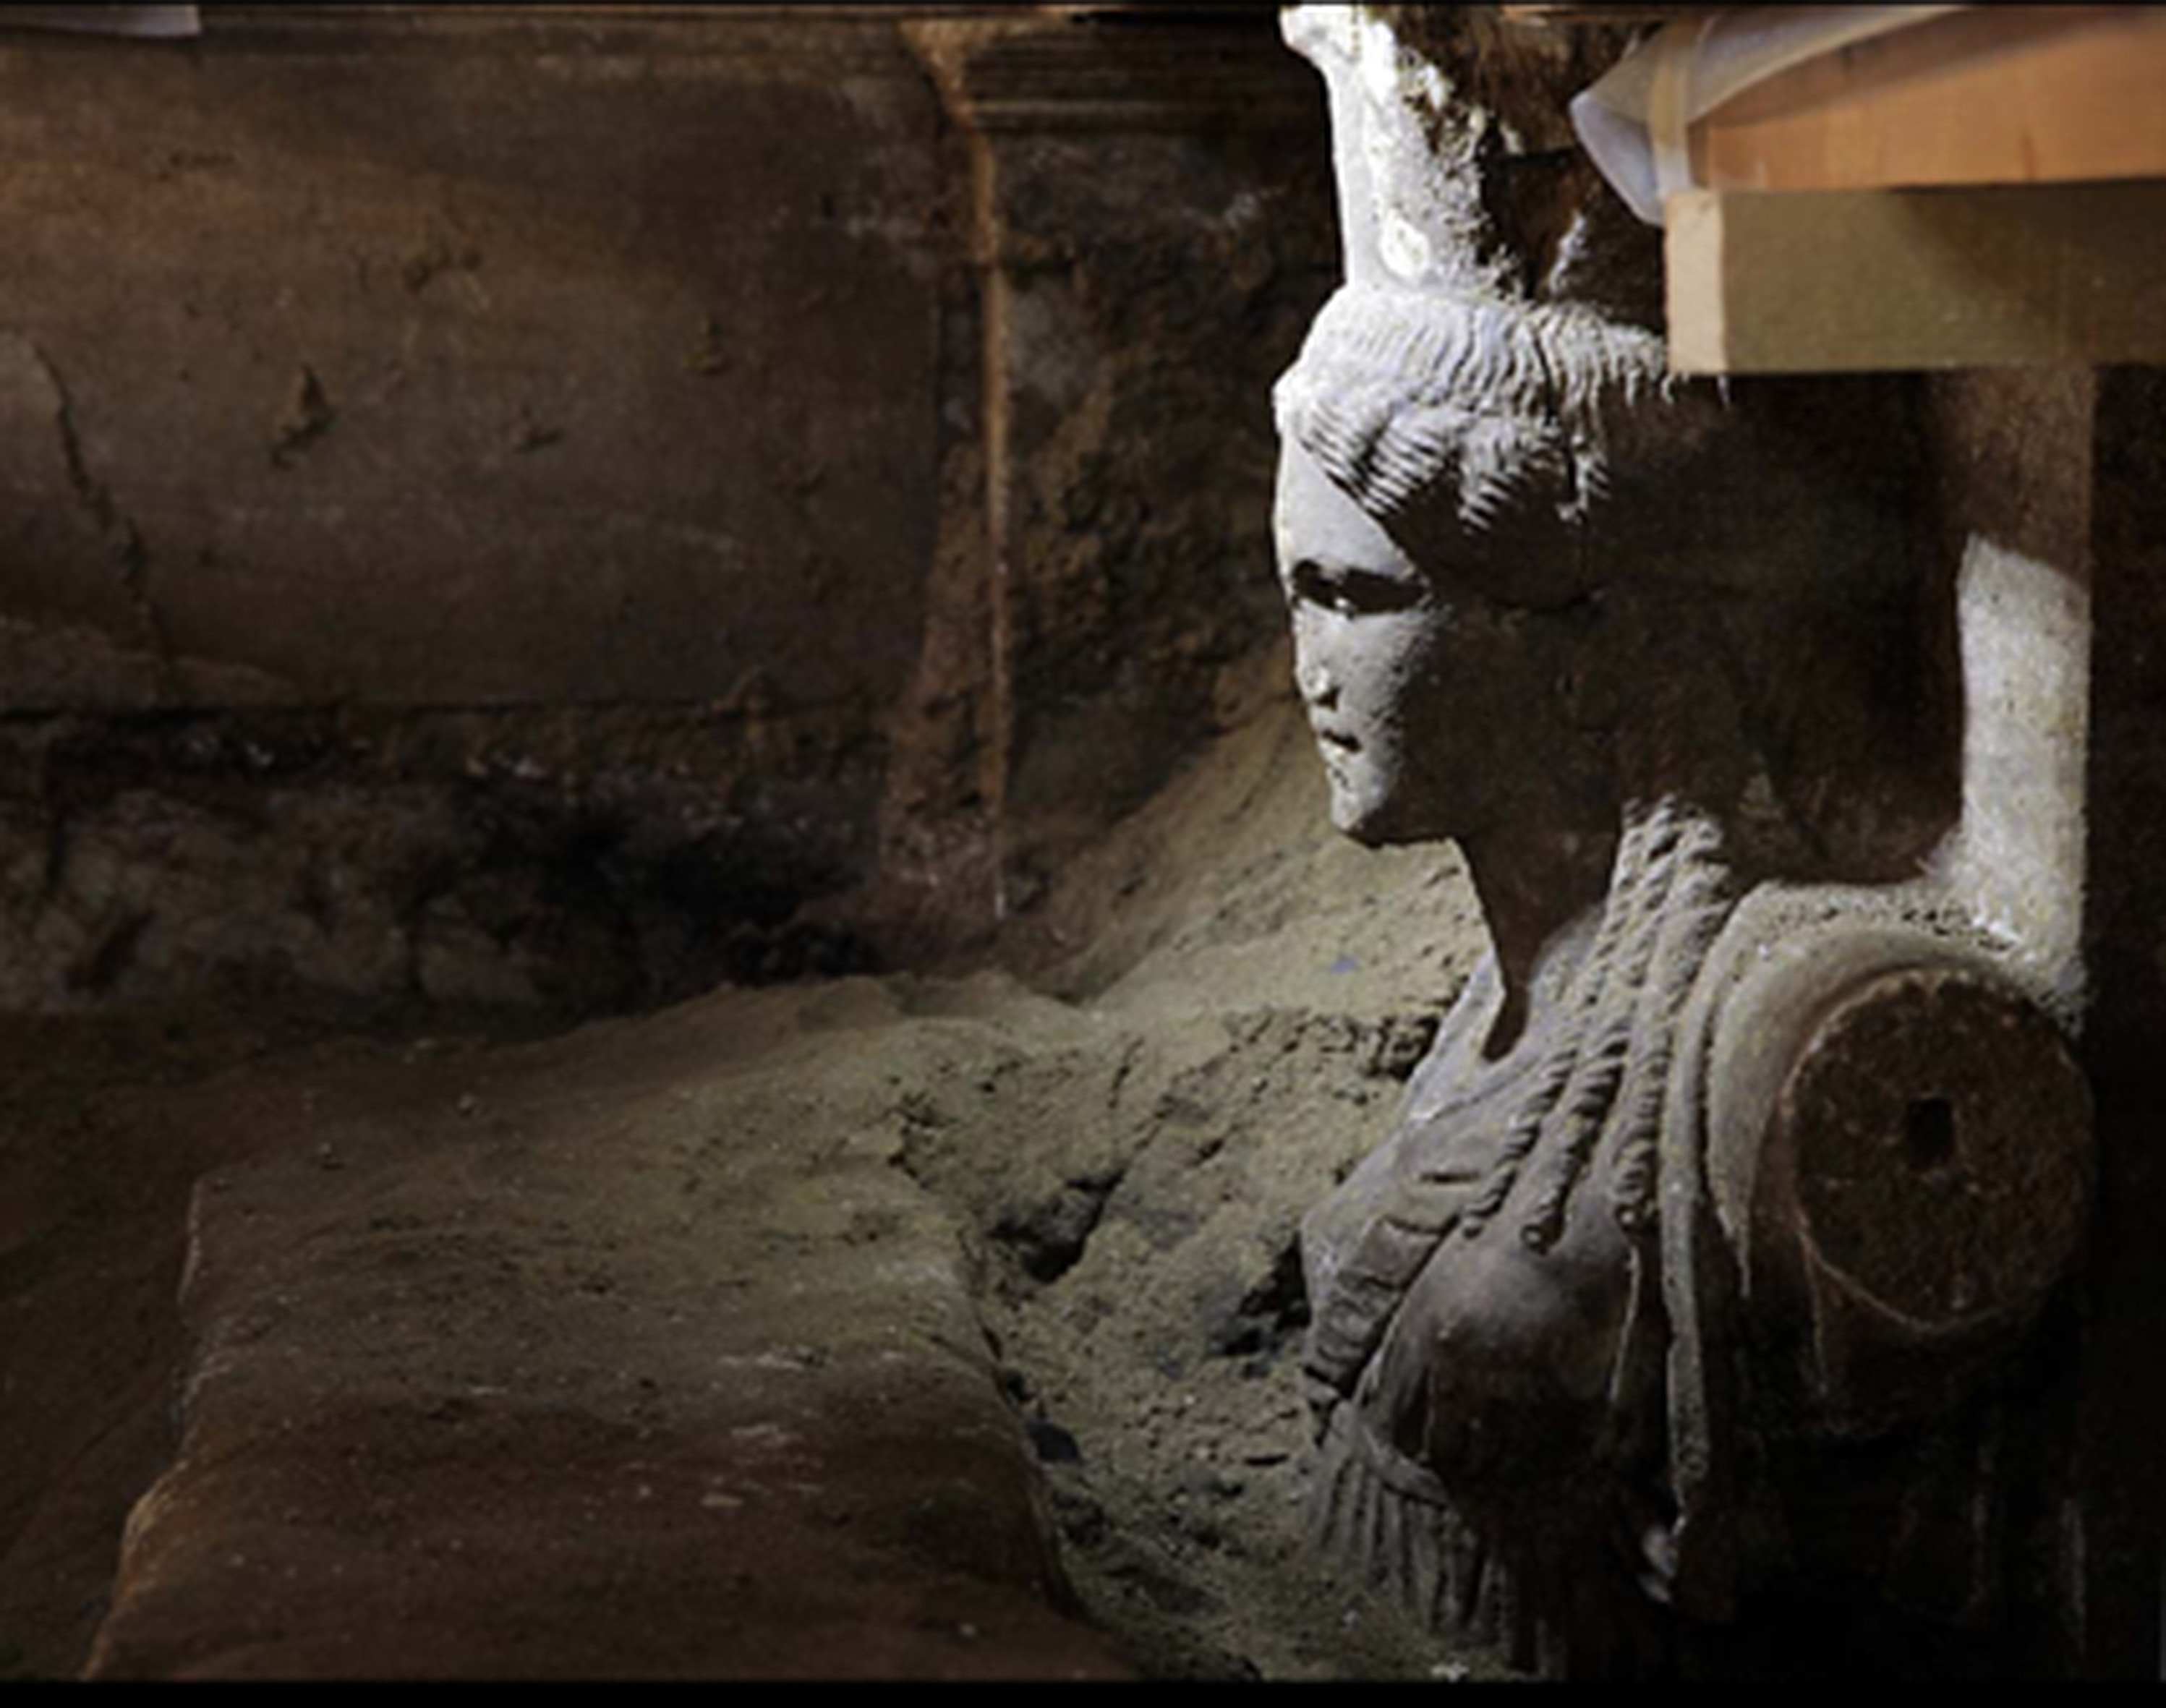 Καρυάτιδες: Οι μορφές που συγκινούν αρχαιολόγους και κοινό